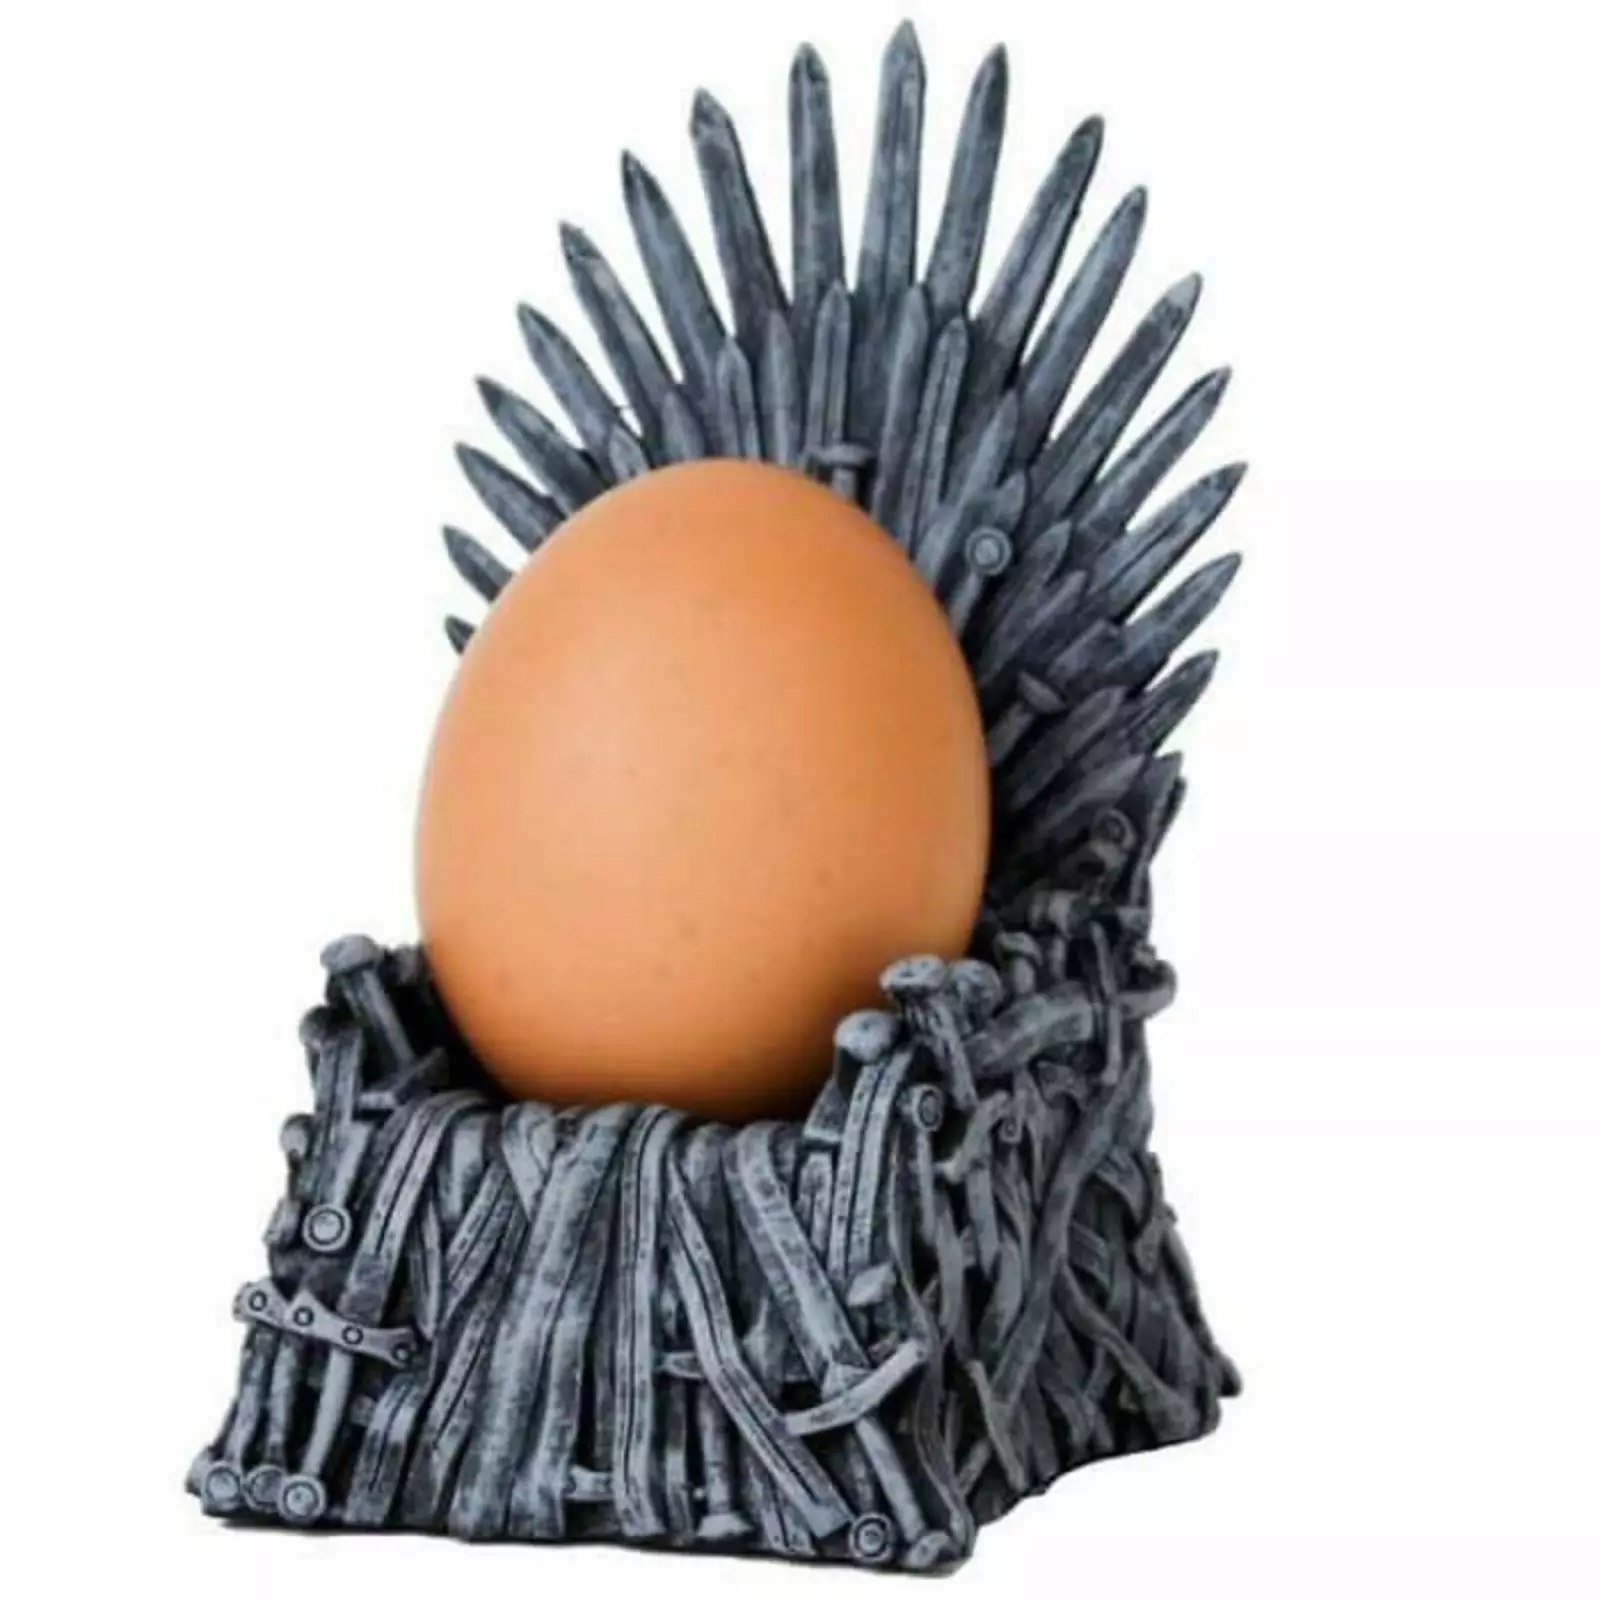 Подставка для яйца в виде Железного трона.